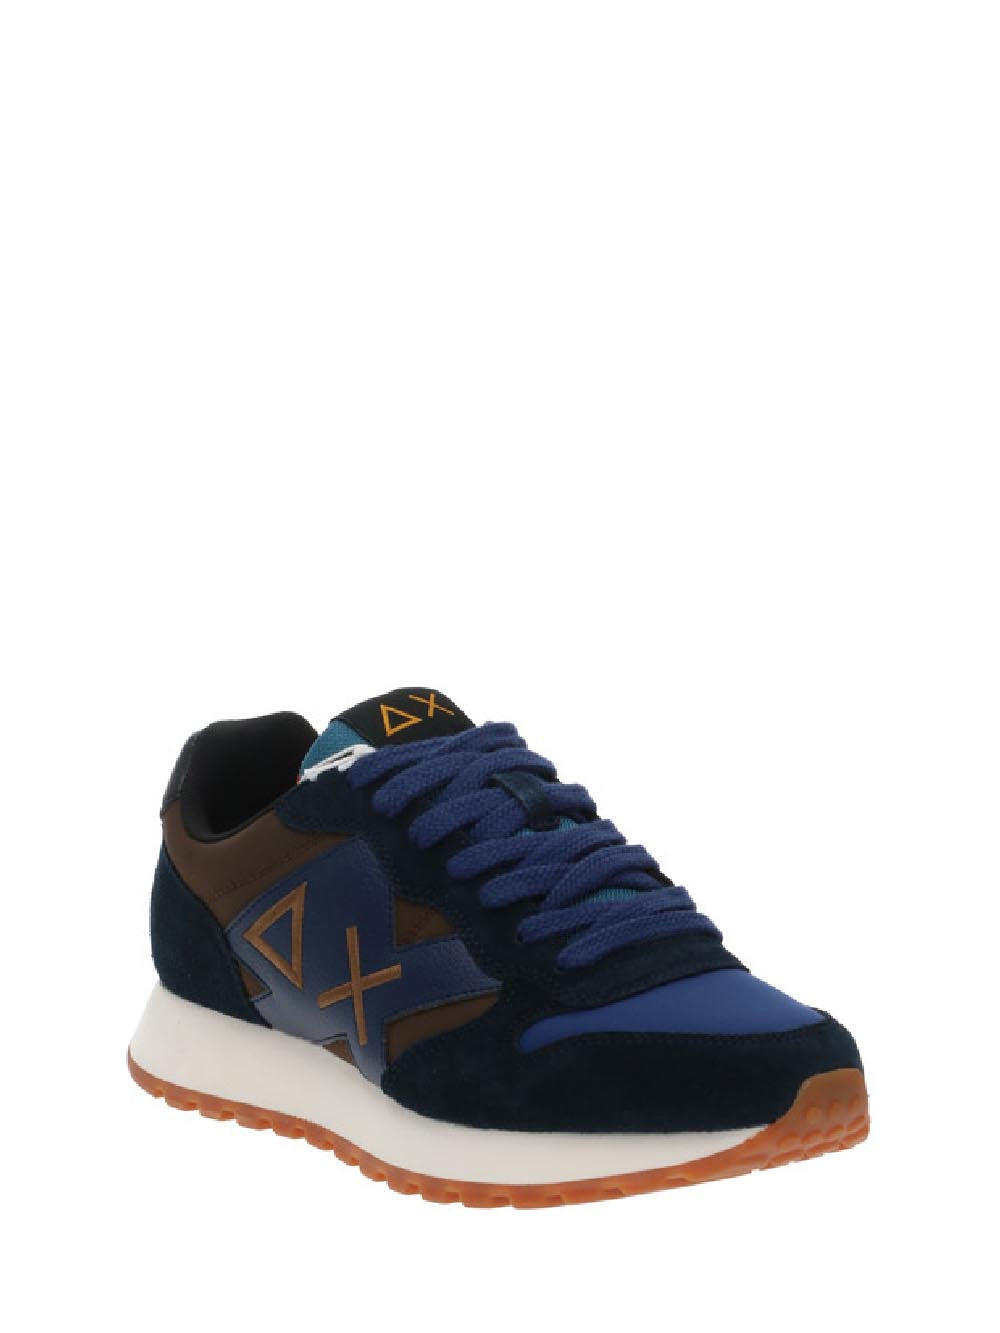 SUN68 Sneakers Uomo Marrone/blu